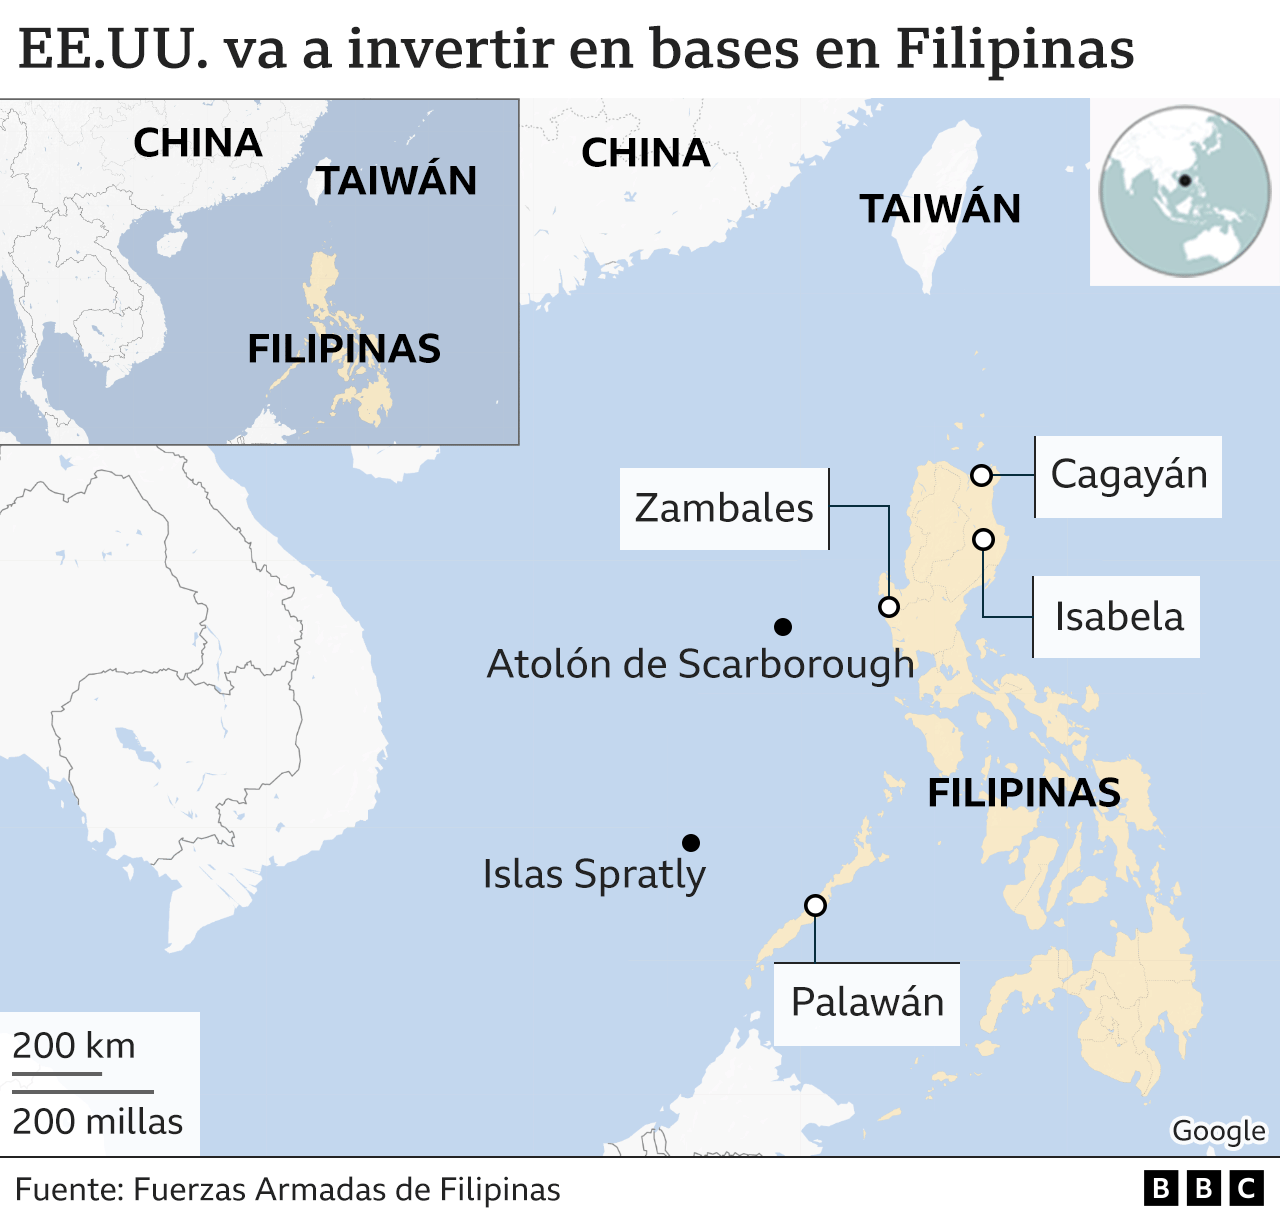 Mapa de Asia donde se destacan Filipinas, Taiwán y China.